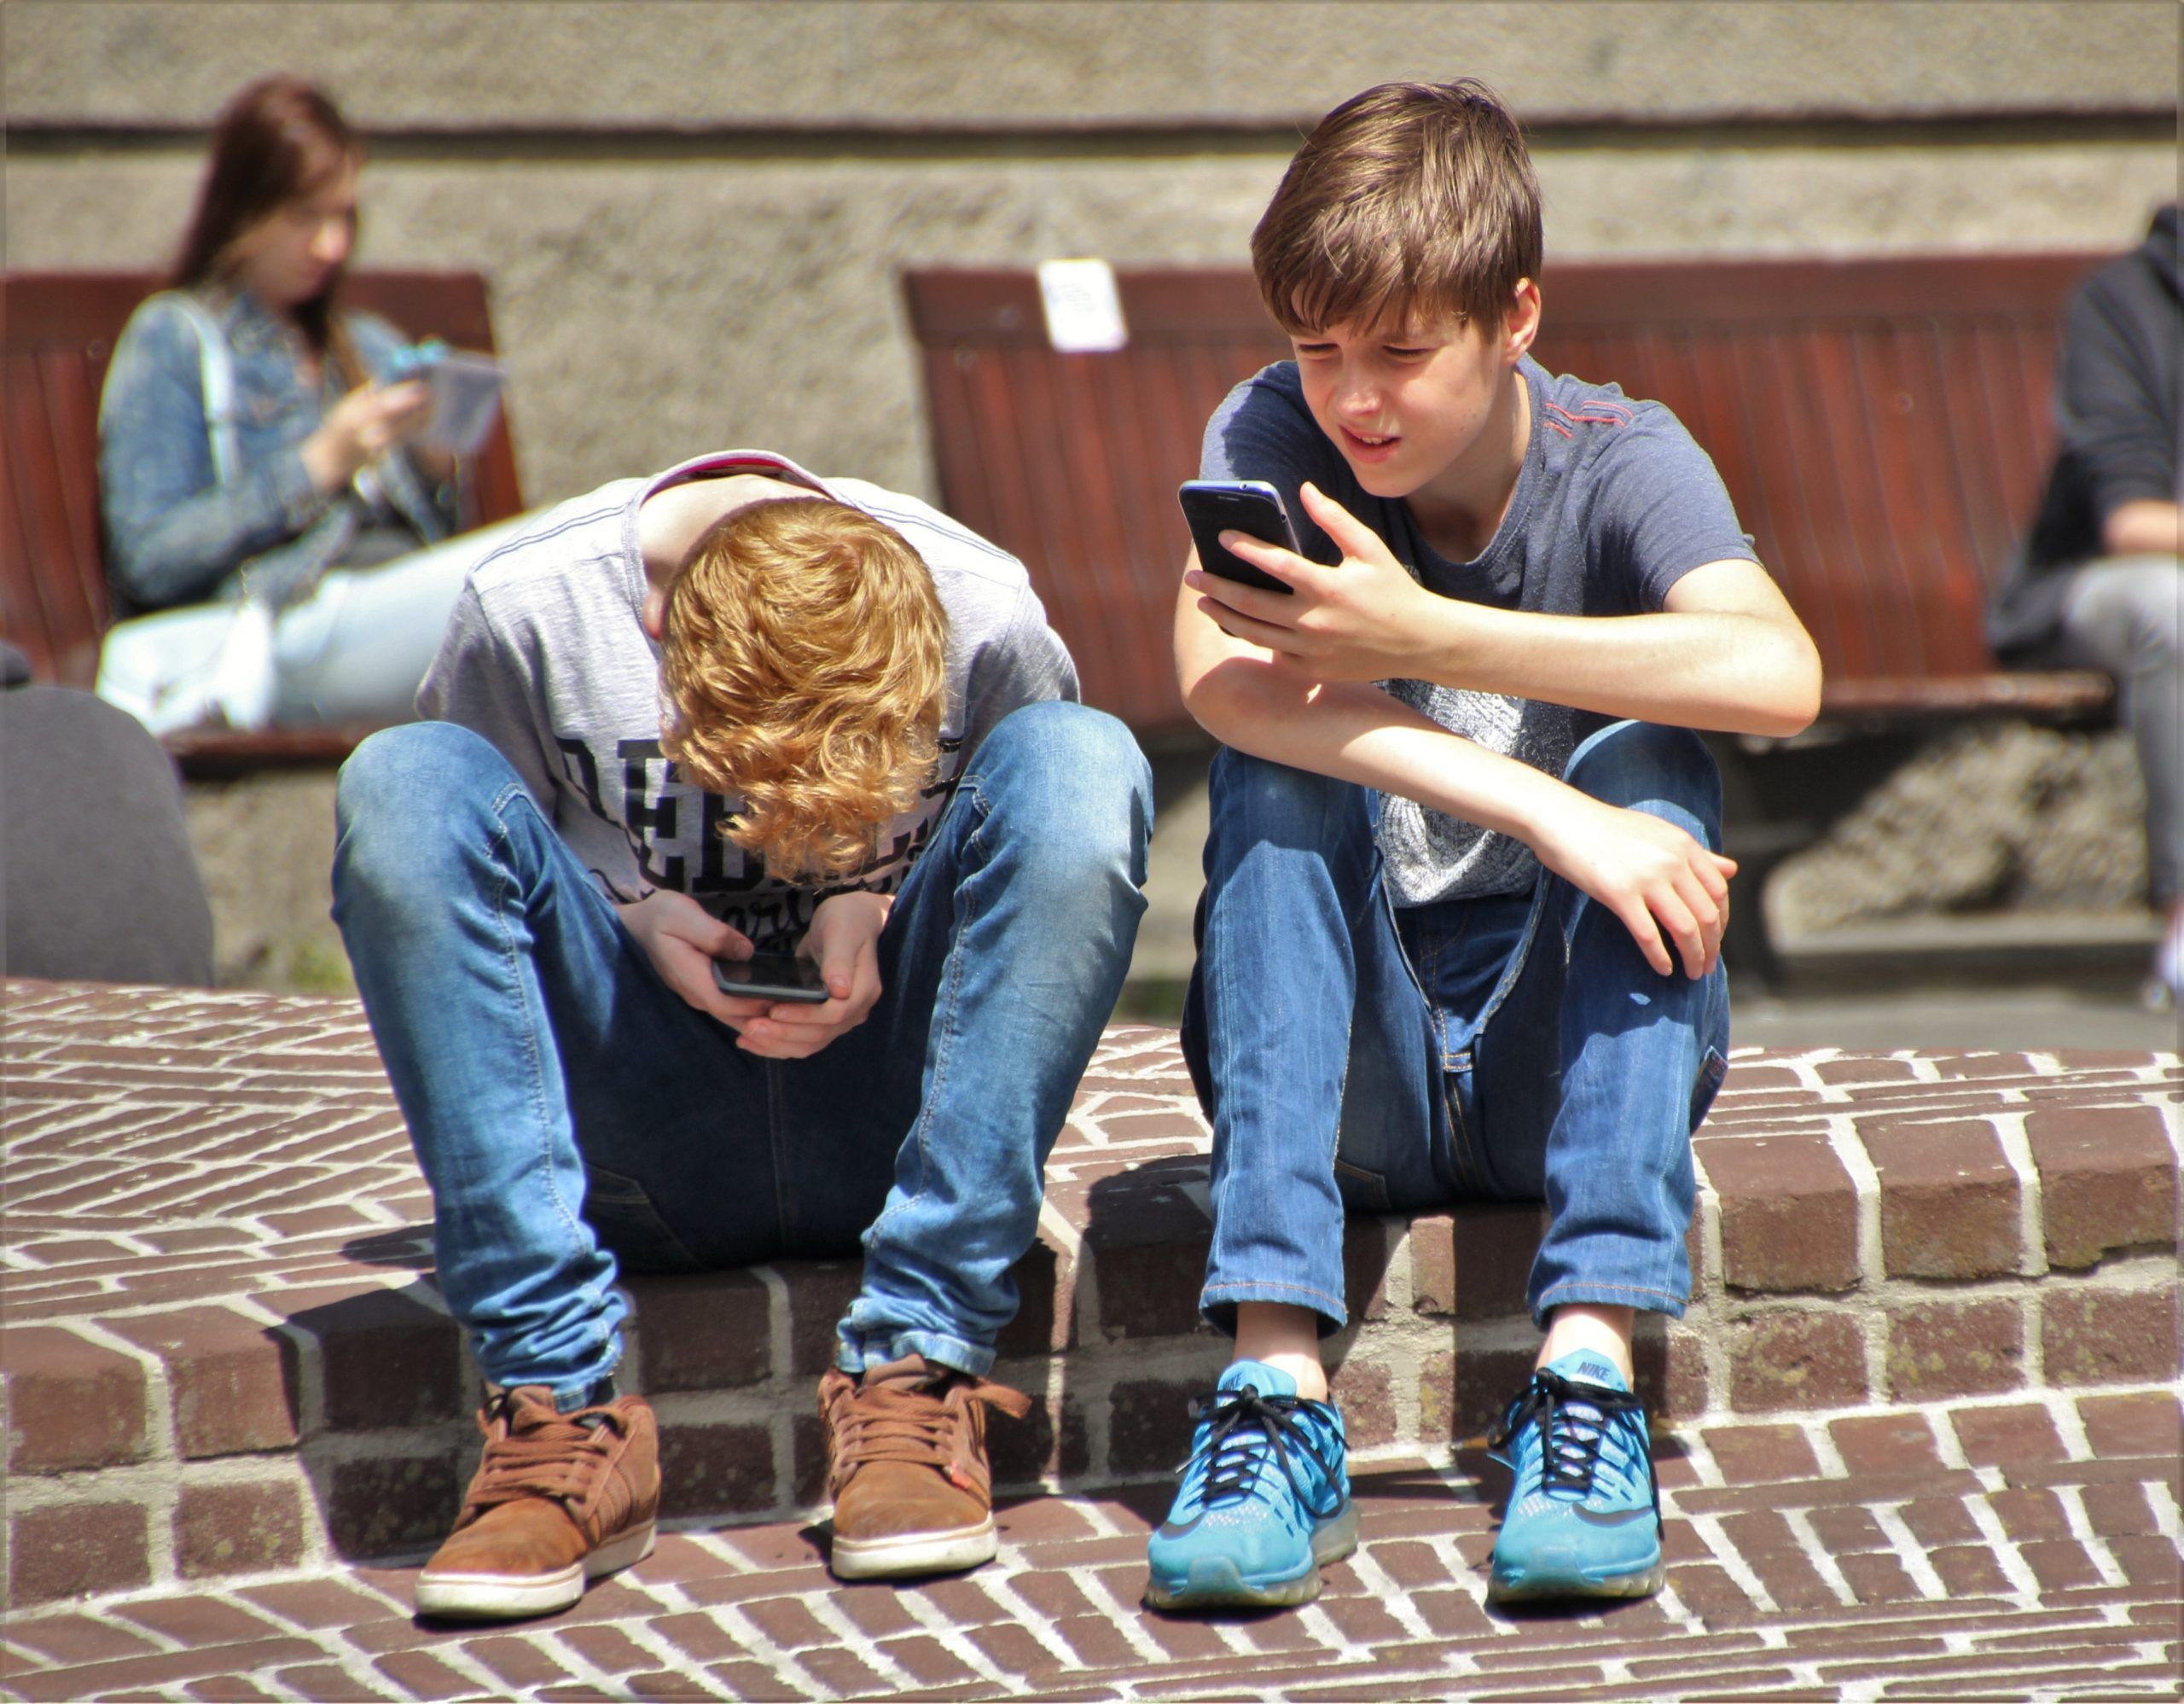 "Come parlano i nostri figli Frasi in gergo giovanile nell'era di internet 